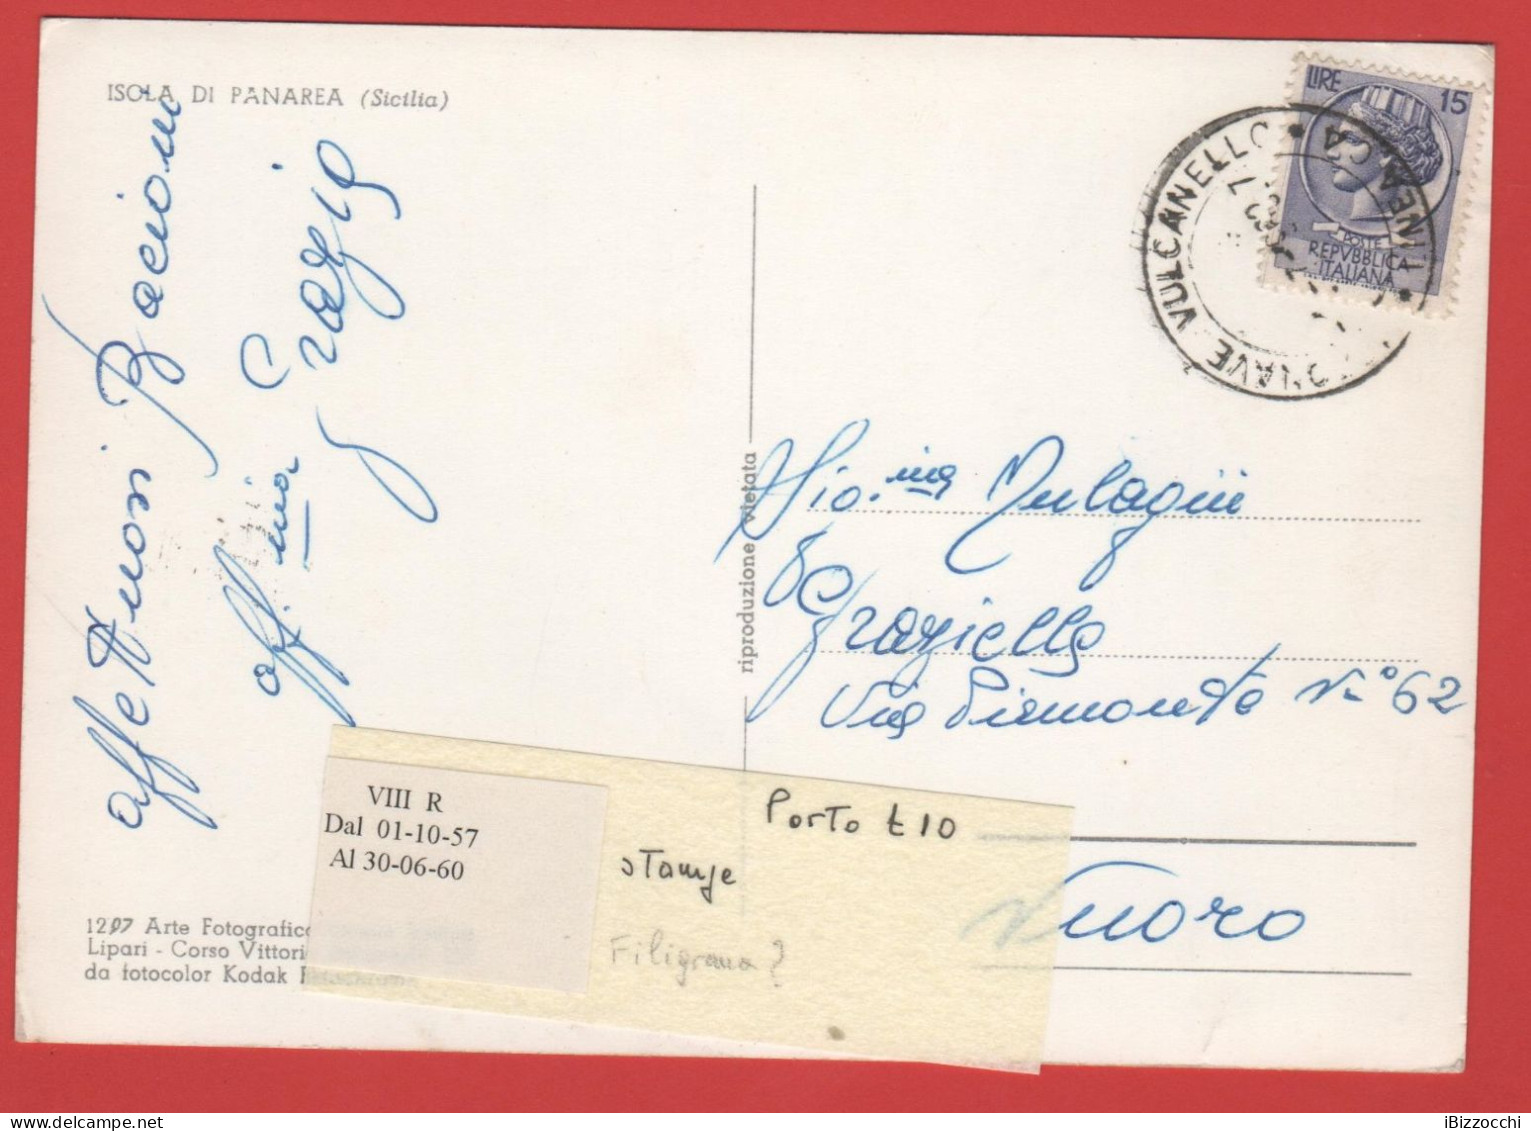 ITALIA - Storia Postale Repubblica - 1958 -  15 Antica Moneta Siracusana - Cartolina Dell'Isola Di Panarea  - Viaggiata - 1946-60: Storia Postale